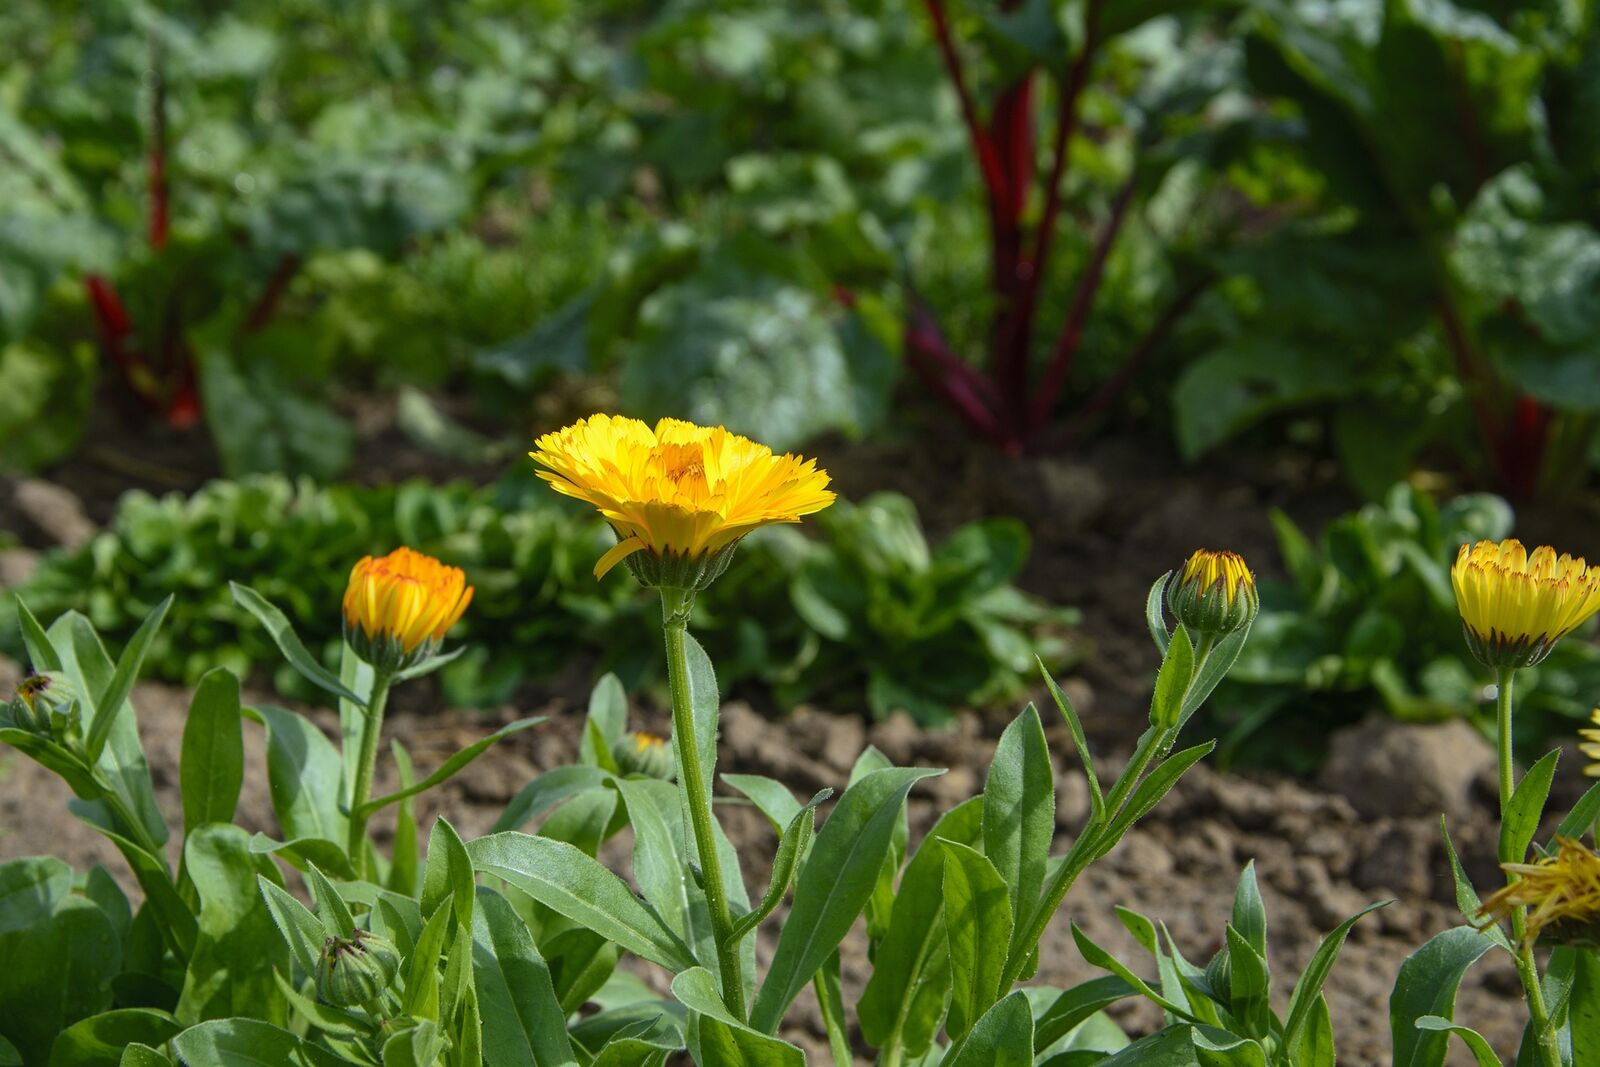 Salat und Ringelblumen als gute Beetpartner für Mangold